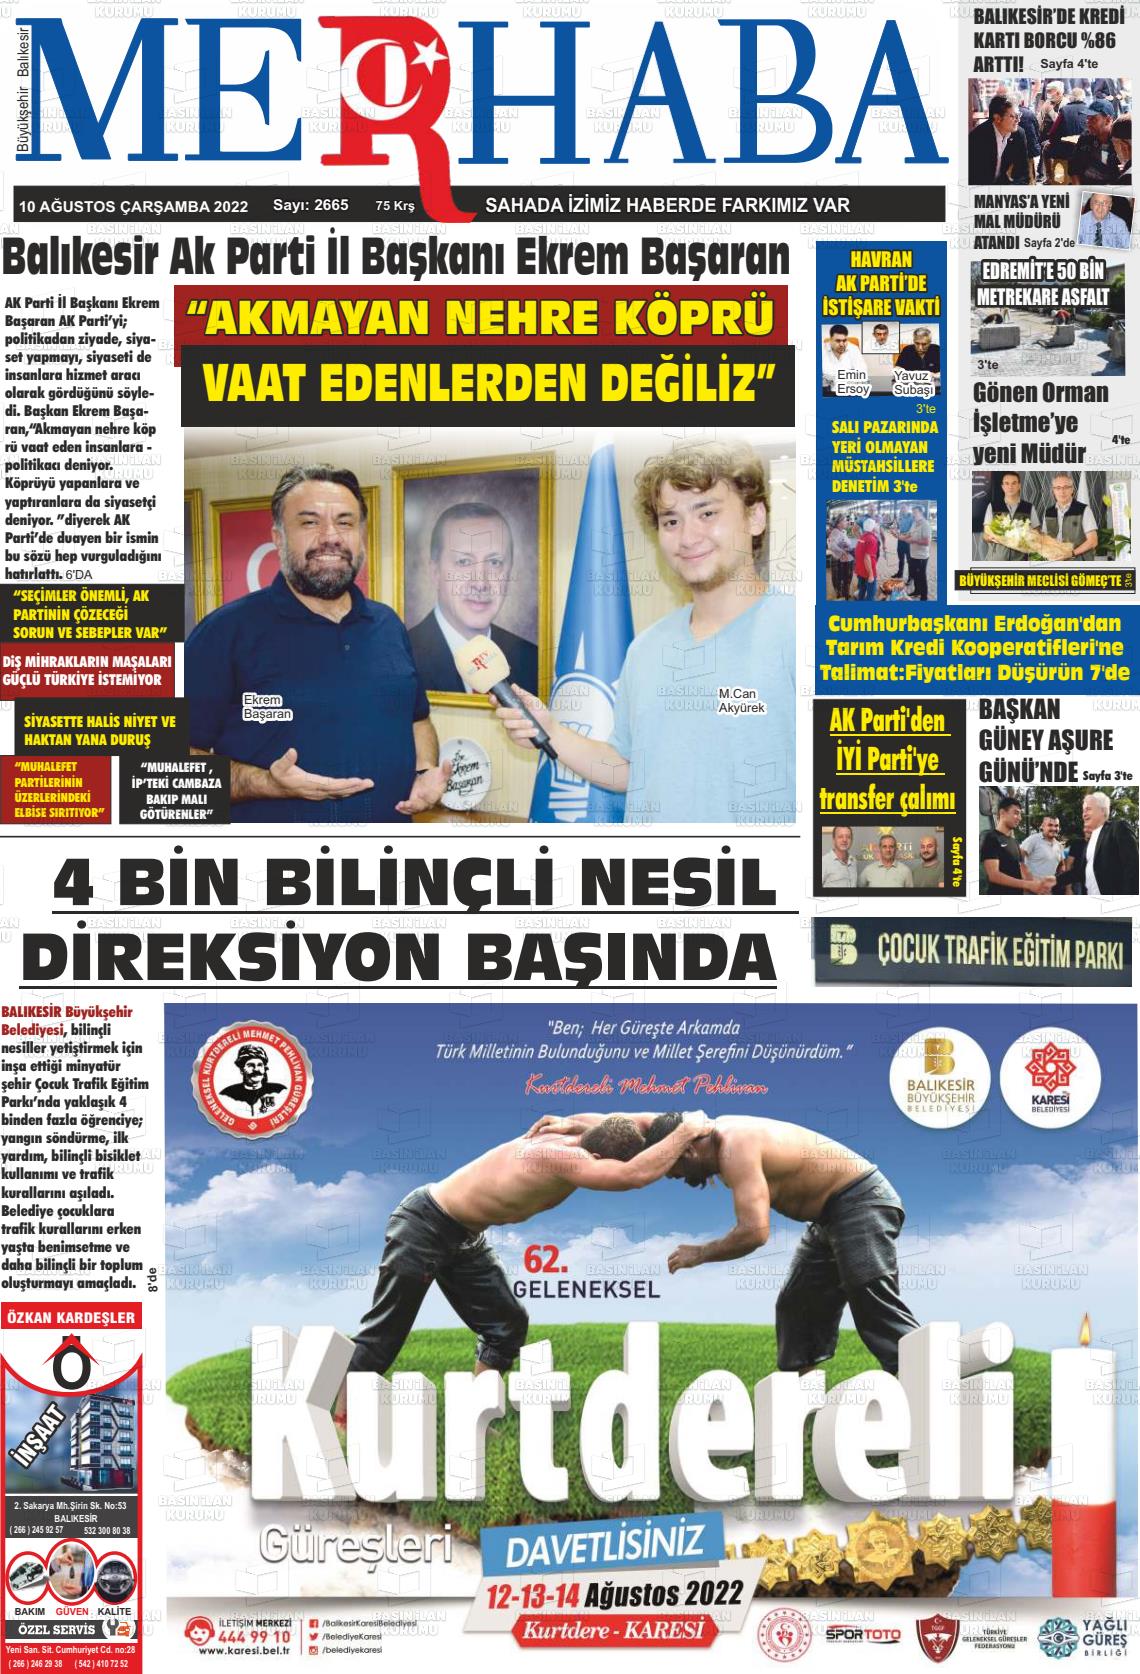 10 Ağustos 2022 Büyükşehir Merhaba GAzetesi Gazete Manşeti